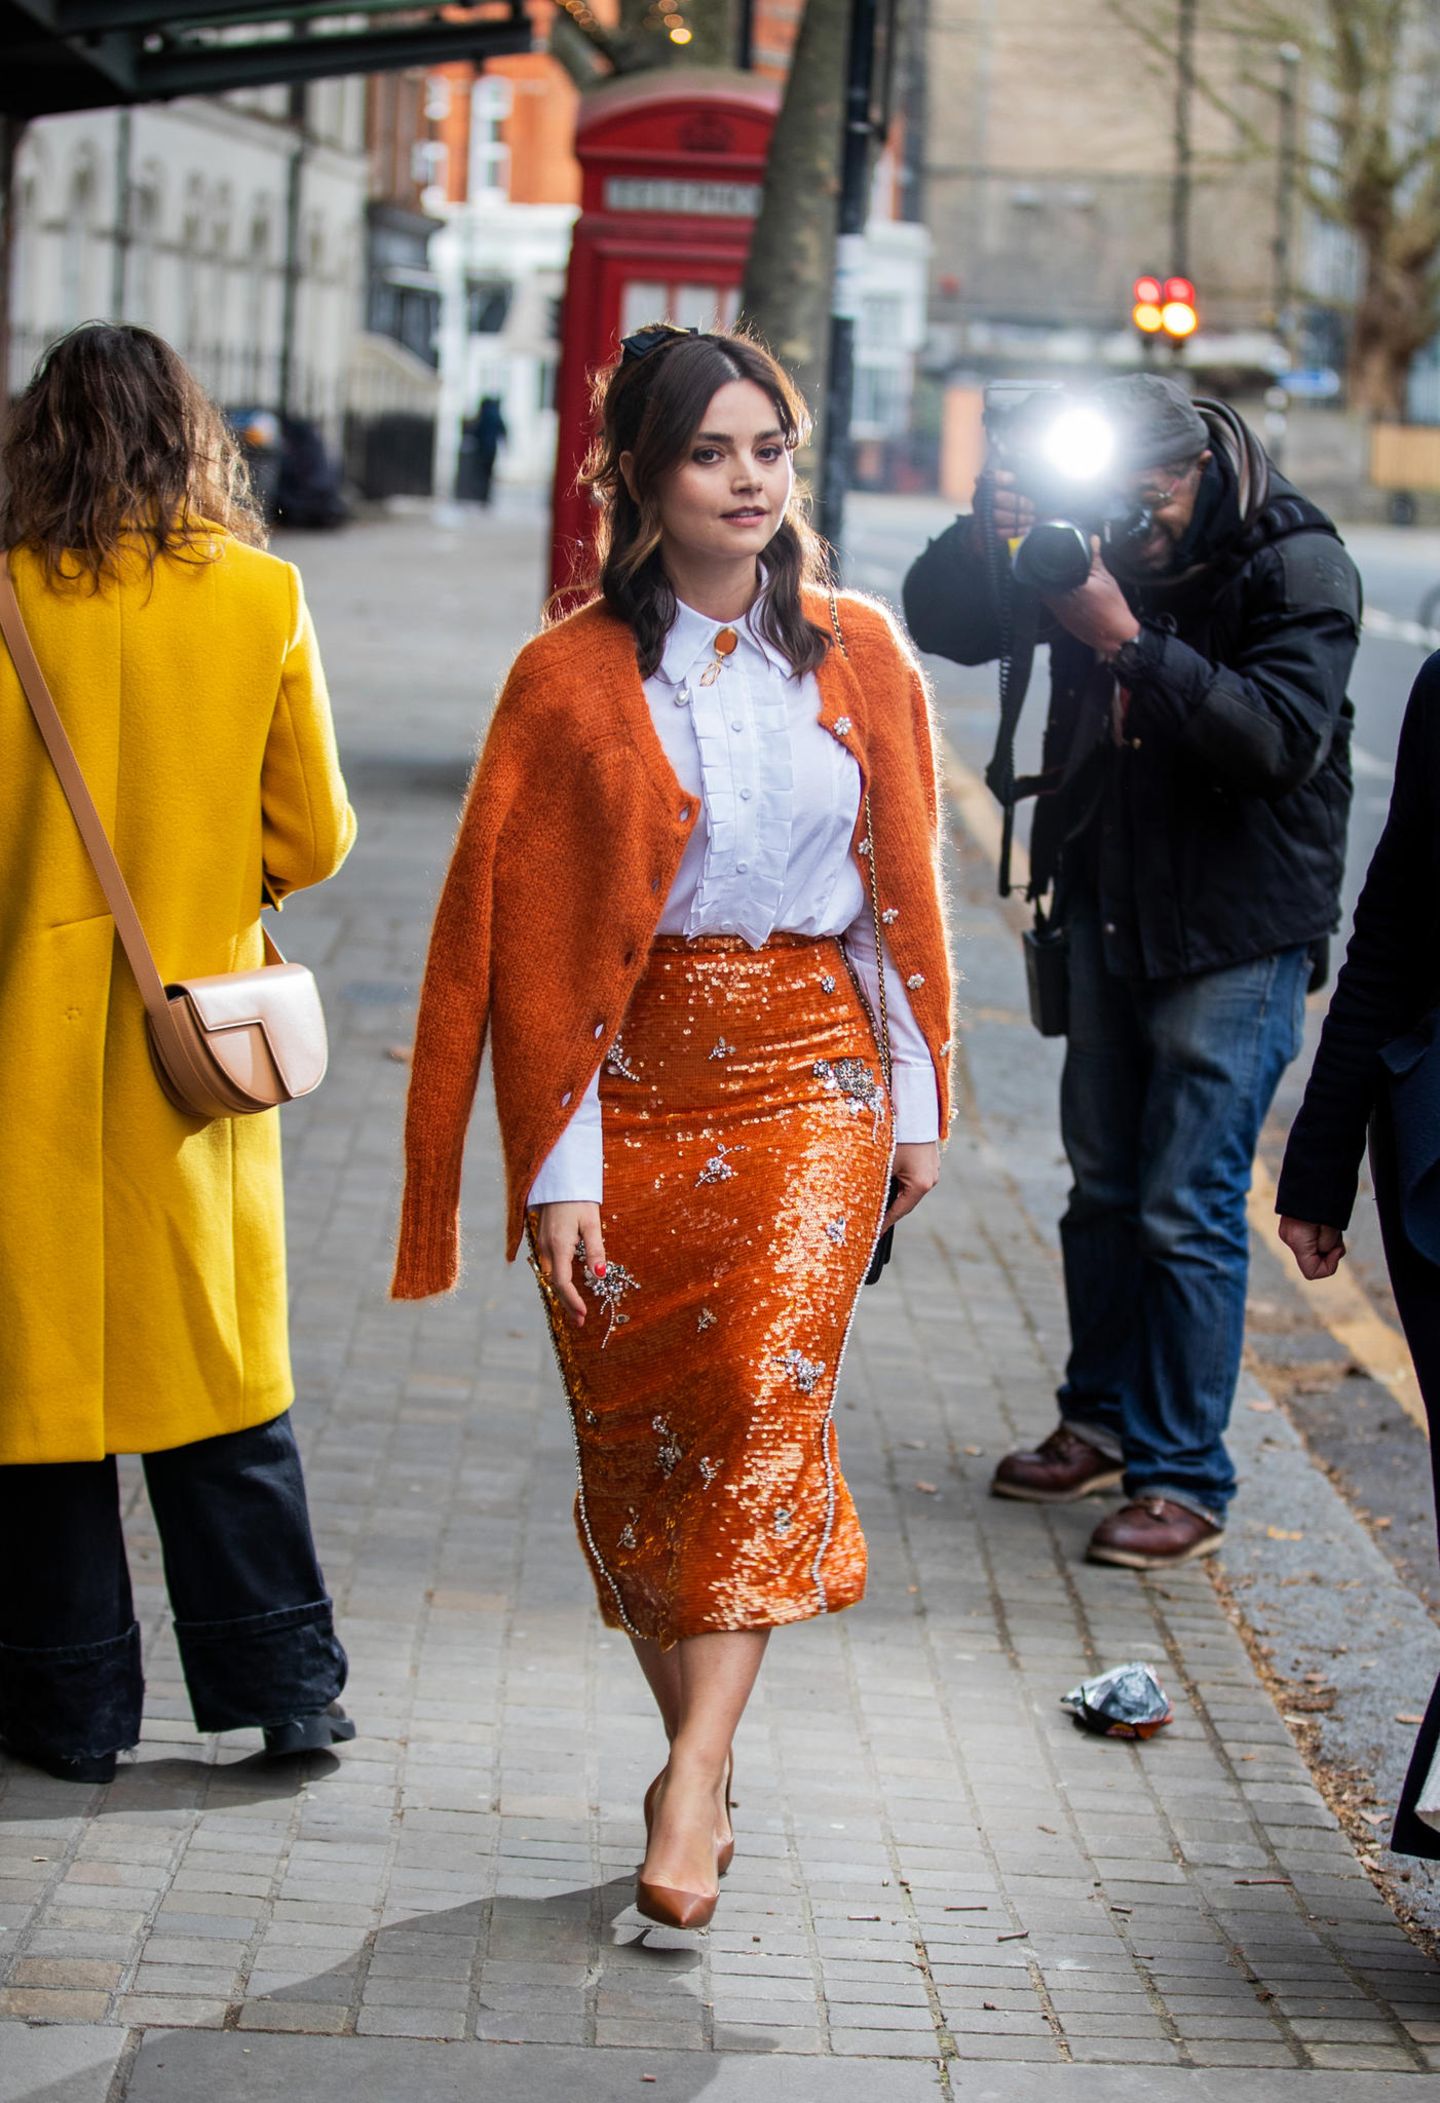 Auf dem Weg zur Fashion-Show von Erdem in London vereint Jenna Coleman lässigen Streetstyle und leuchtenden Glamour gleichermaßen.